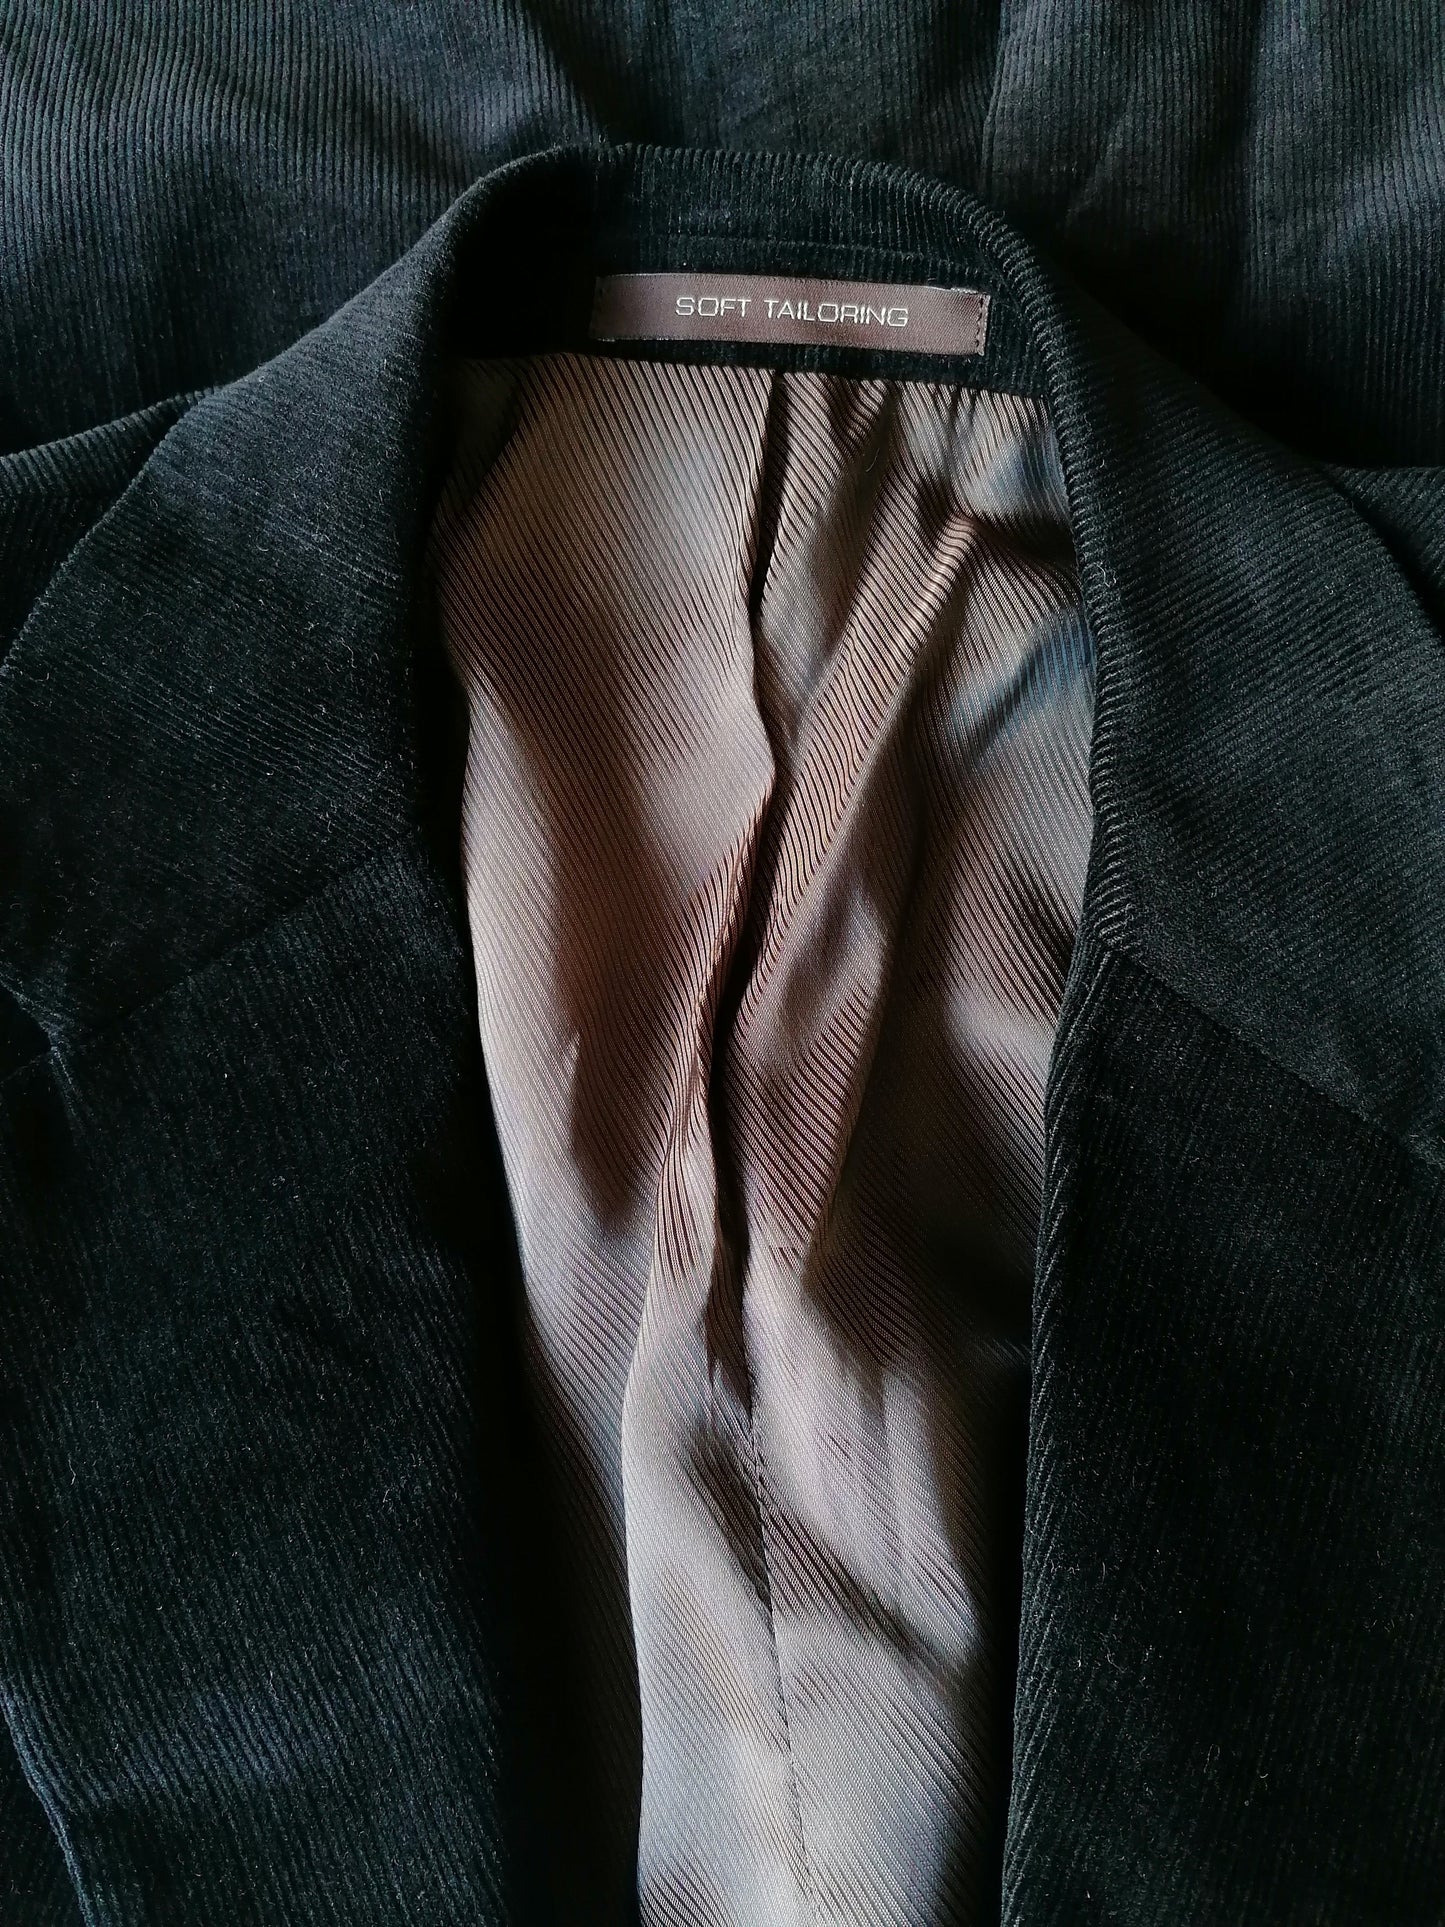 Costume de côtes de pierres. Belle côte. Couleur noire. Taille 48 (veste) et taille 46 (pantalon)